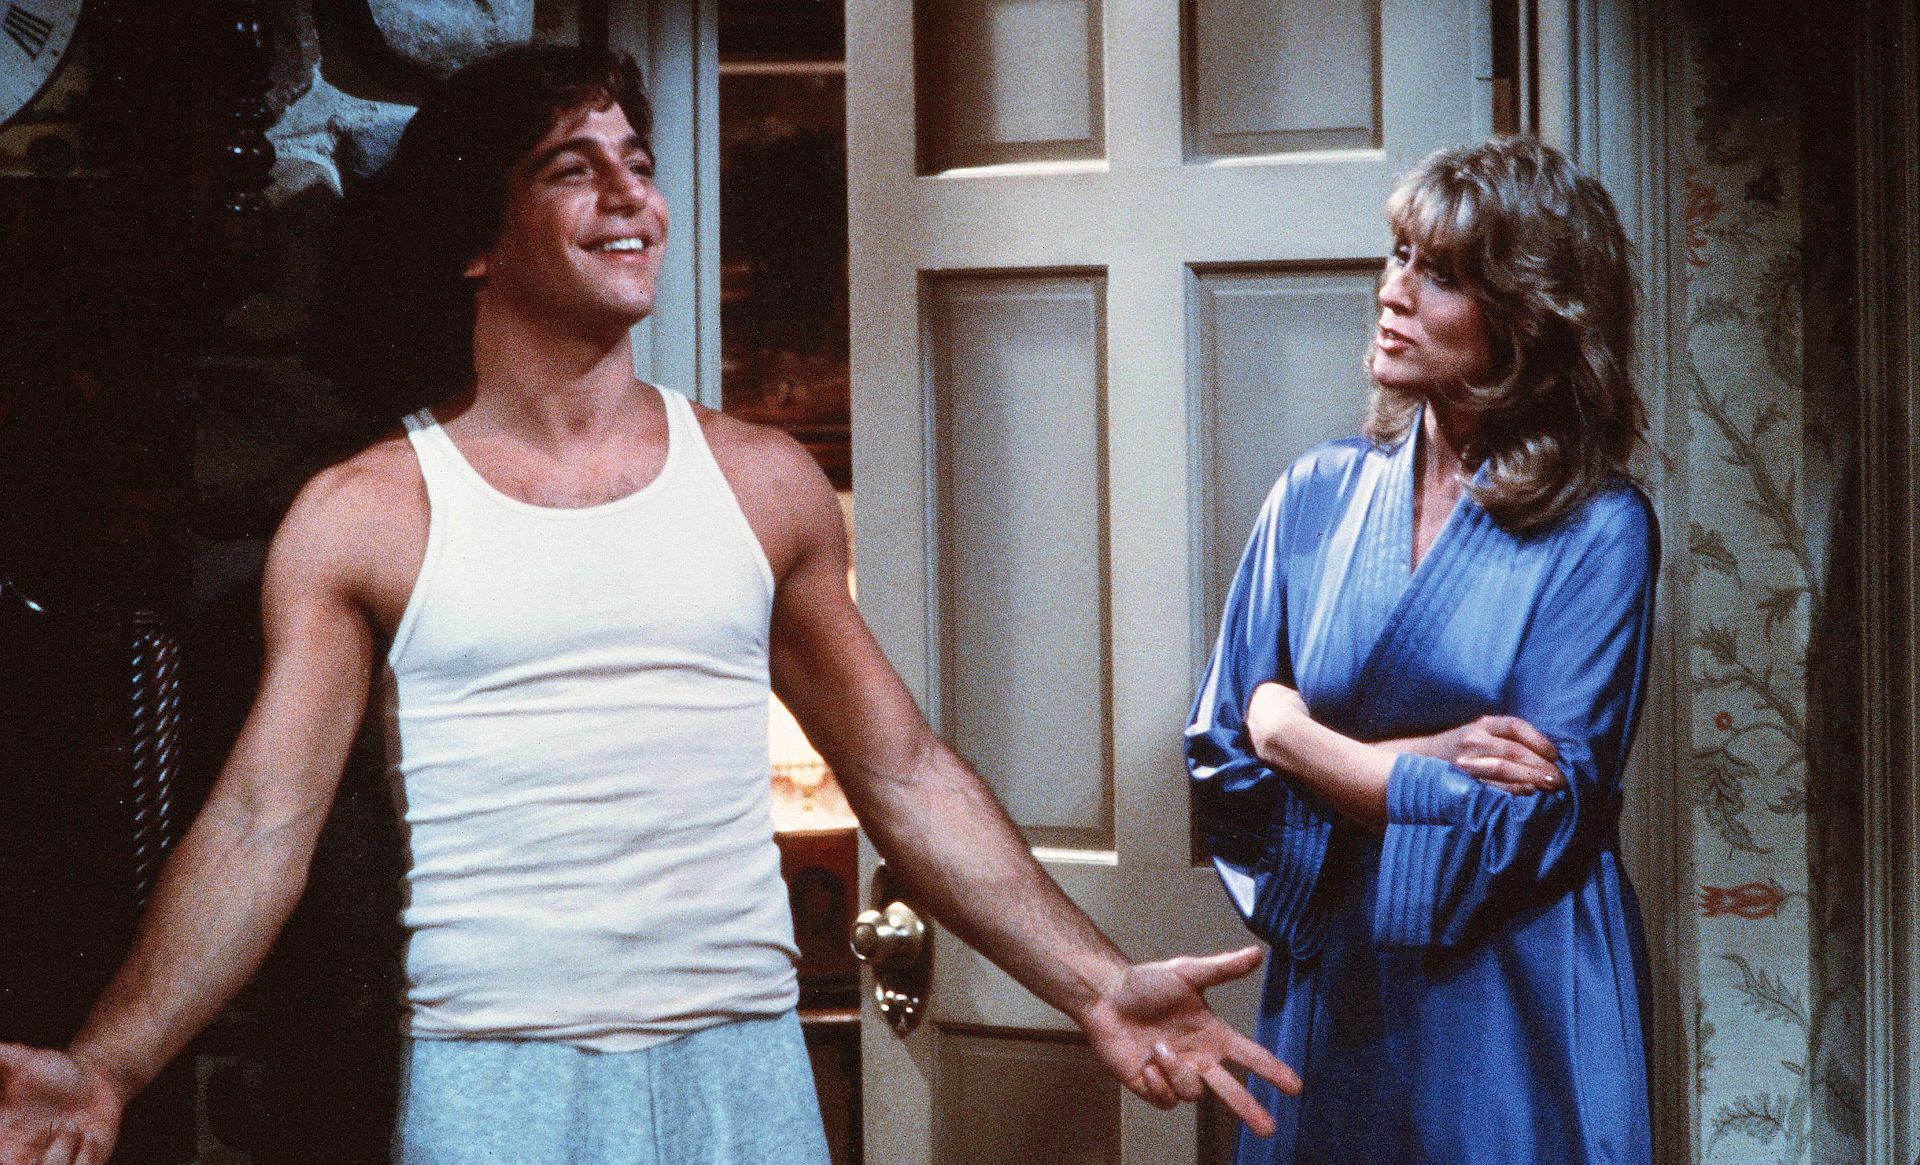 Tony Danza y Judith Light en "¿Quién es el jefe?" que se emitió entre 1984 y 1992 y ahora se transmite en Amazon Prime.